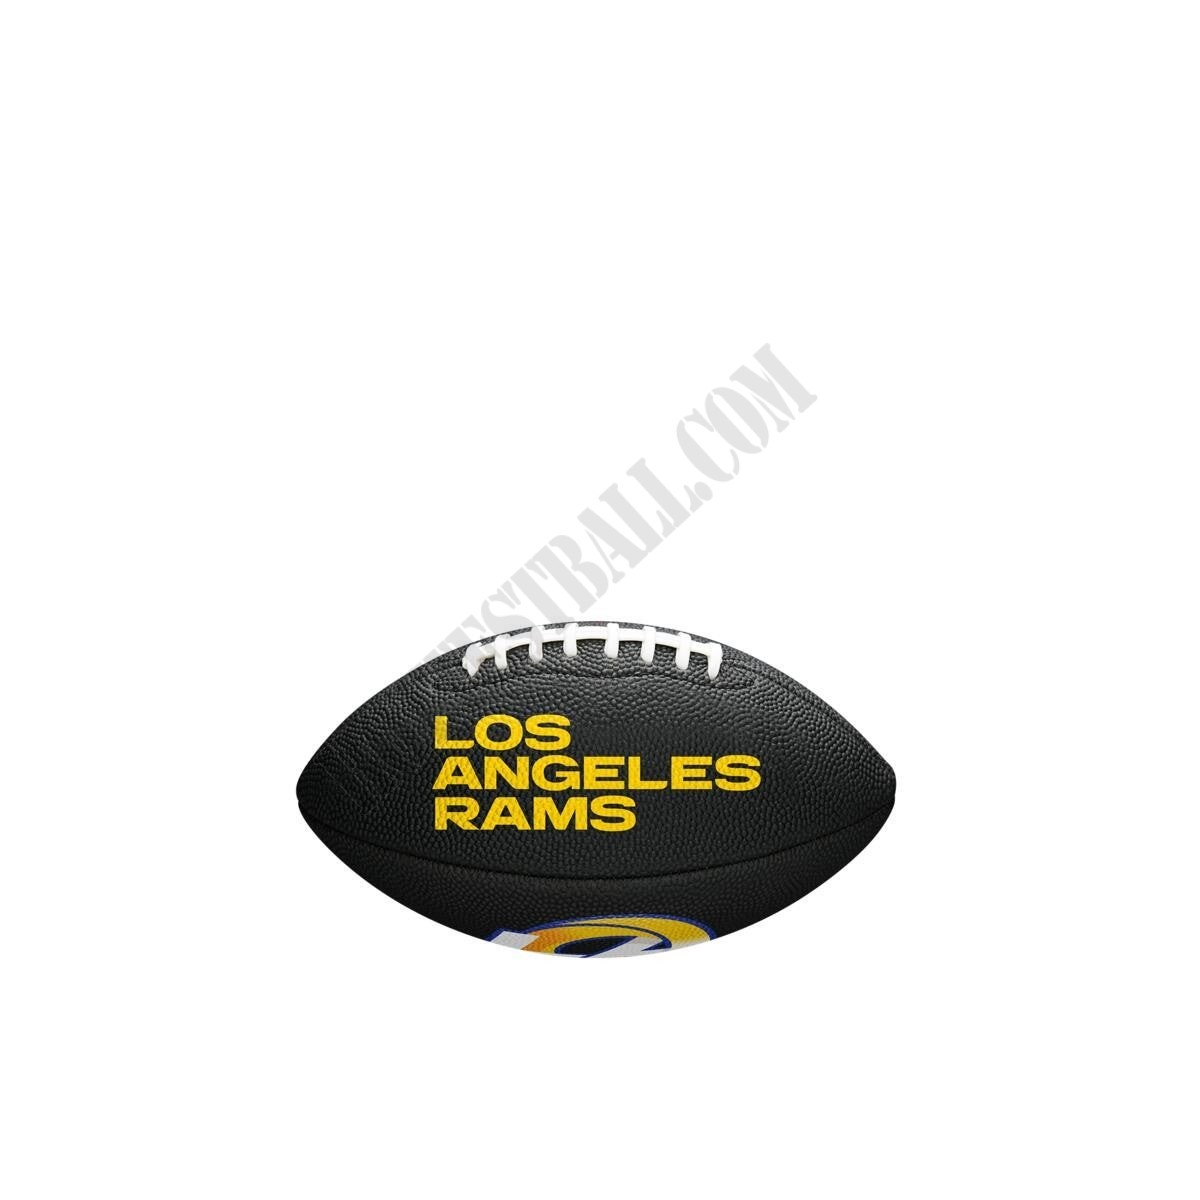 NFL Team Logo Mini Football - Los Angeles Rams ● Wilson Promotions - NFL Team Logo Mini Football - Los Angeles Rams ● Wilson Promotions